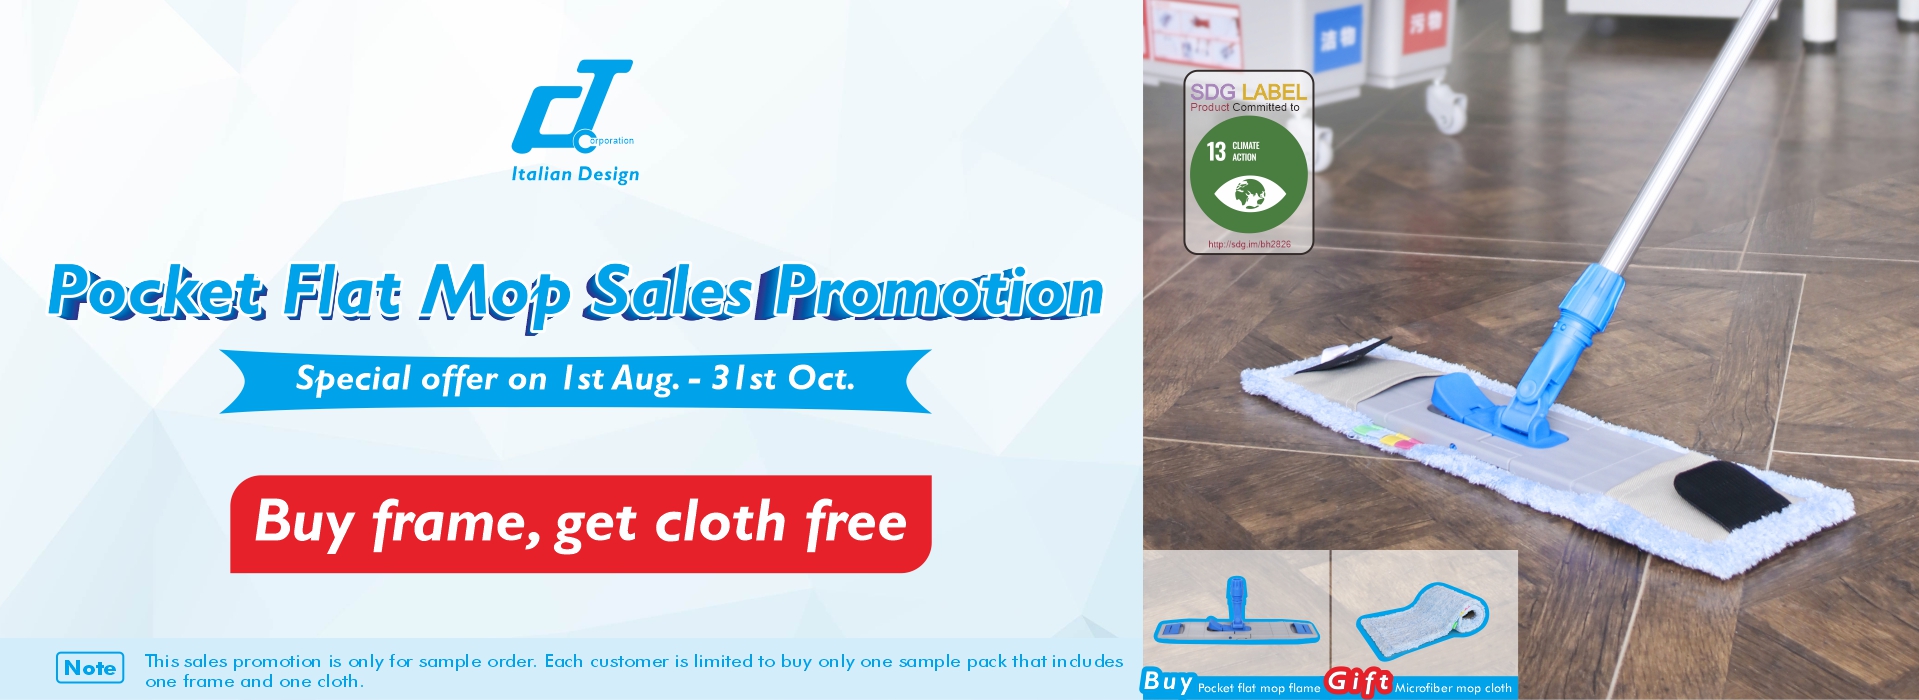 Pocket Flat Mop Salesl Promotion